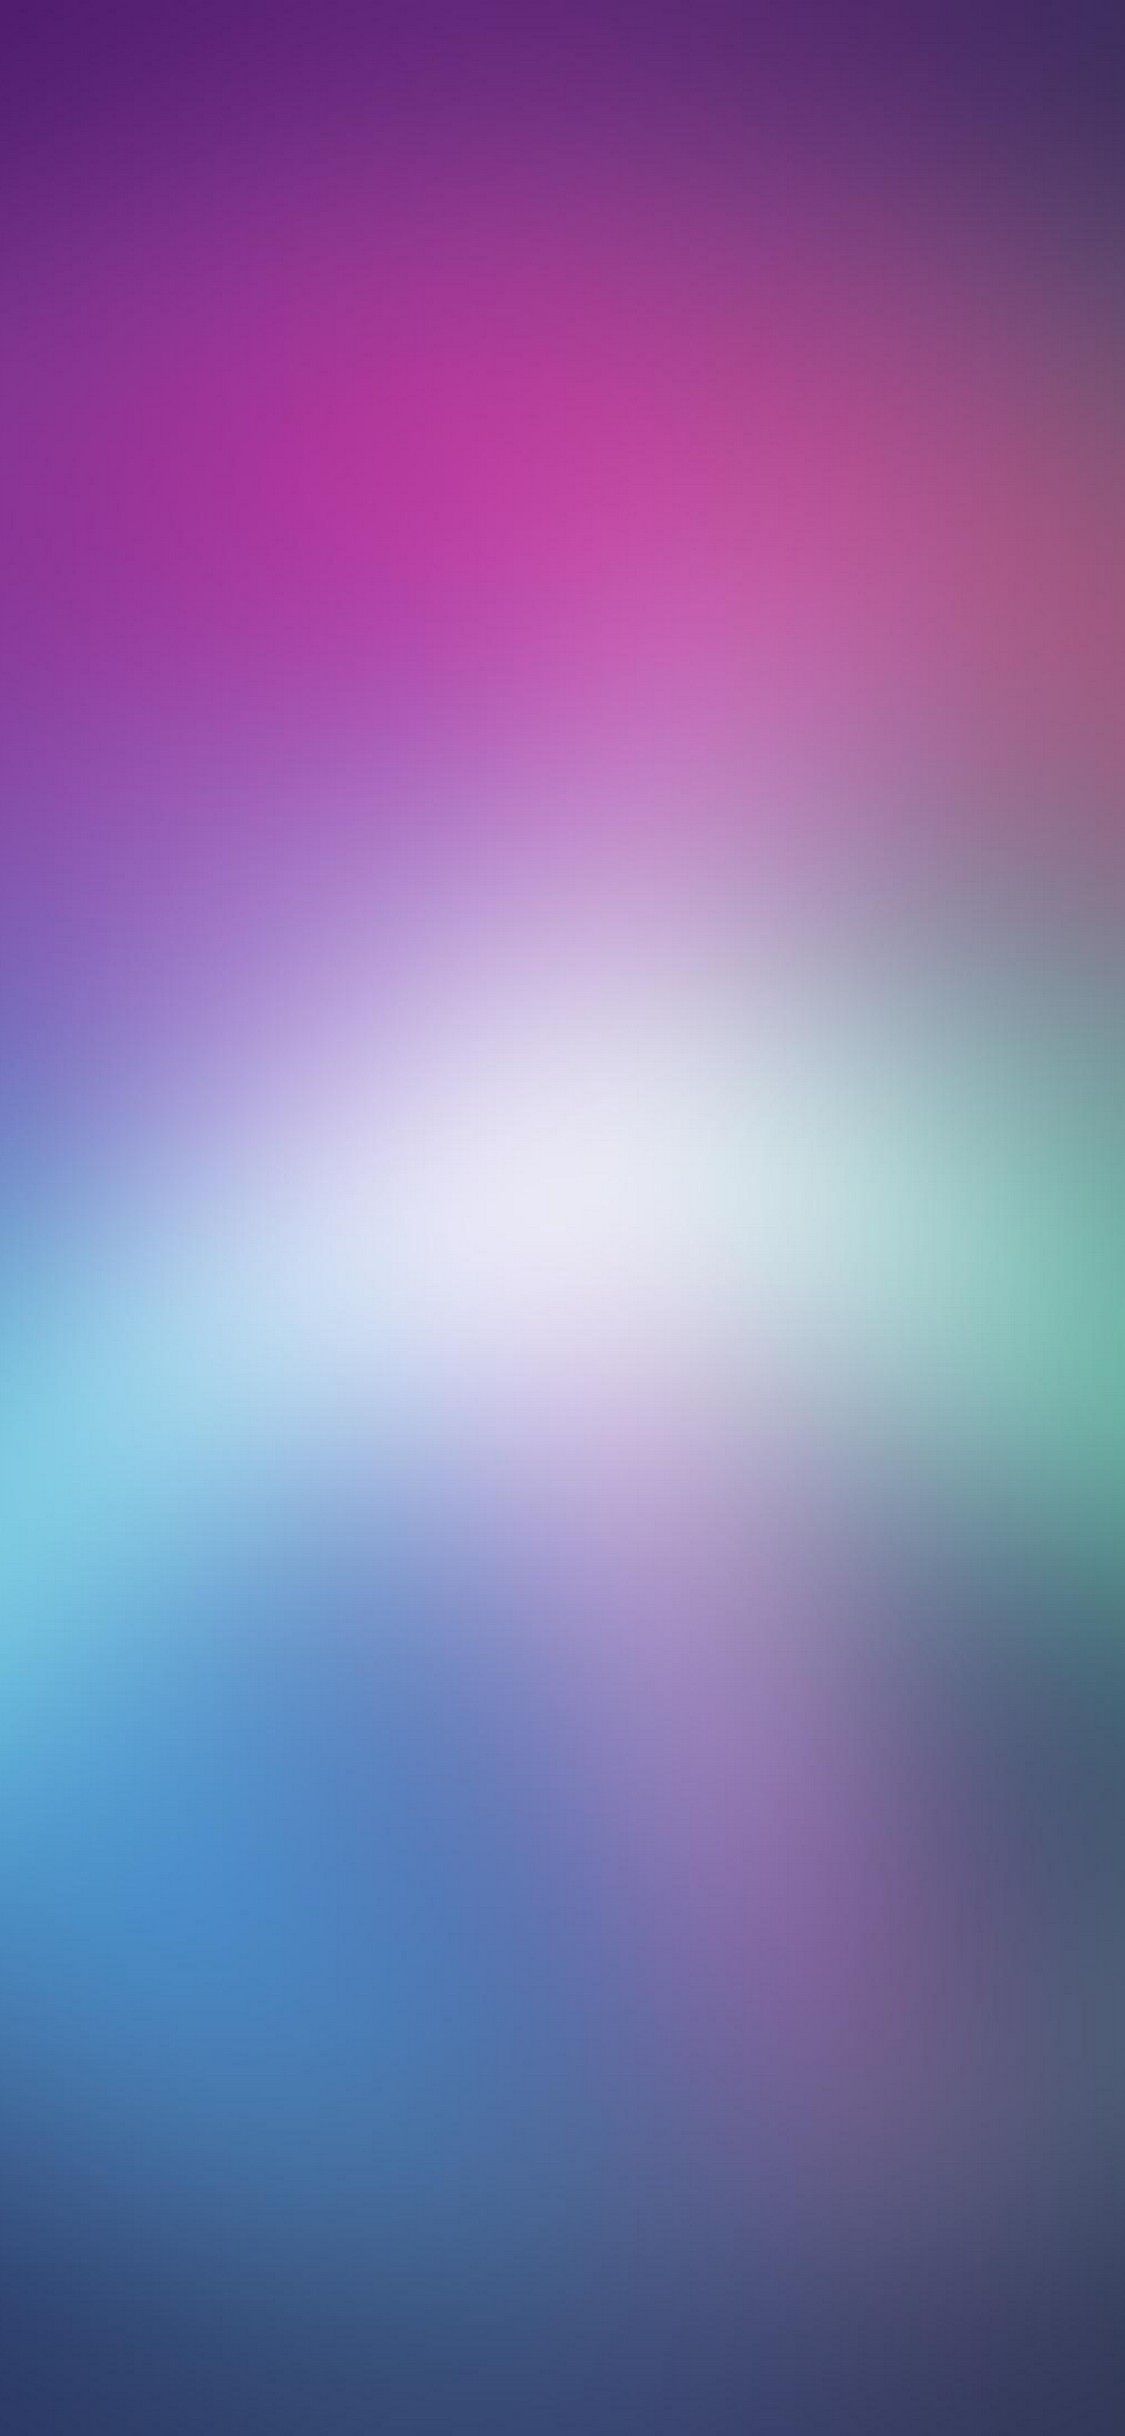 47+] iPhone 6 Wallpaper Dimensions - WallpaperSafari